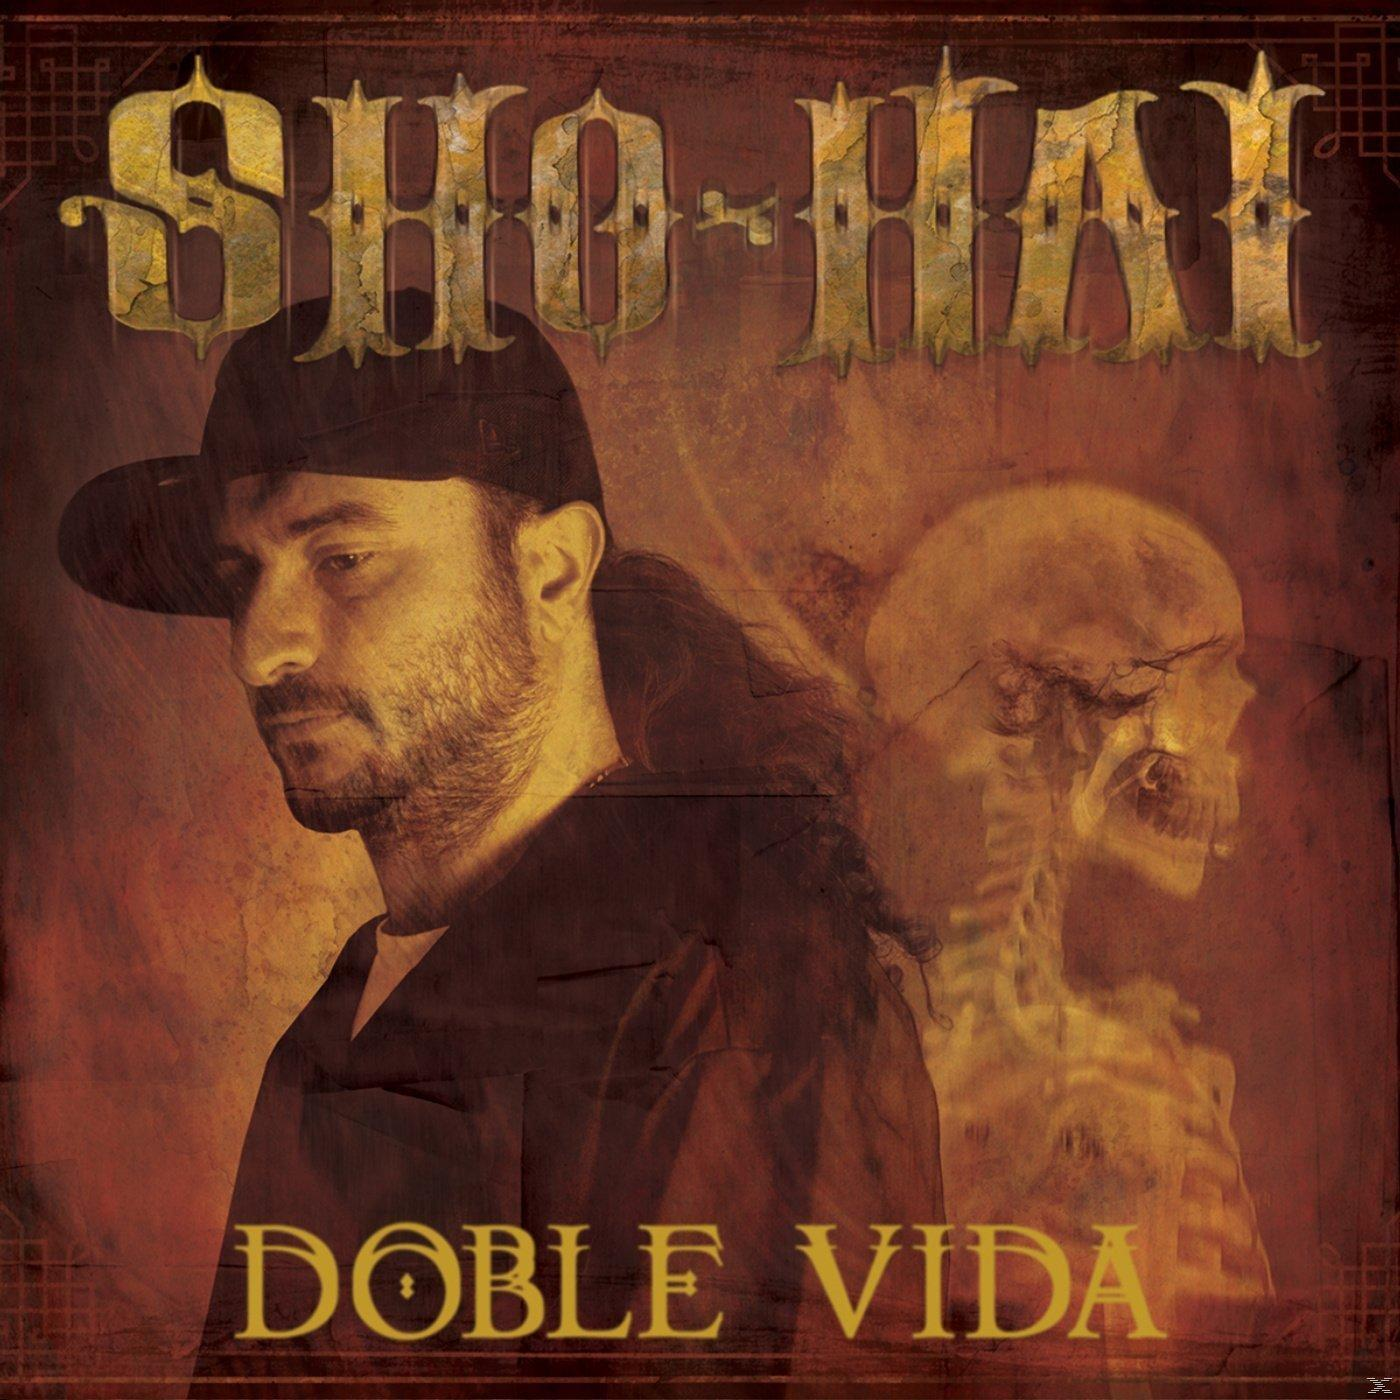 (CD) Vida - Sho-hai - Doble